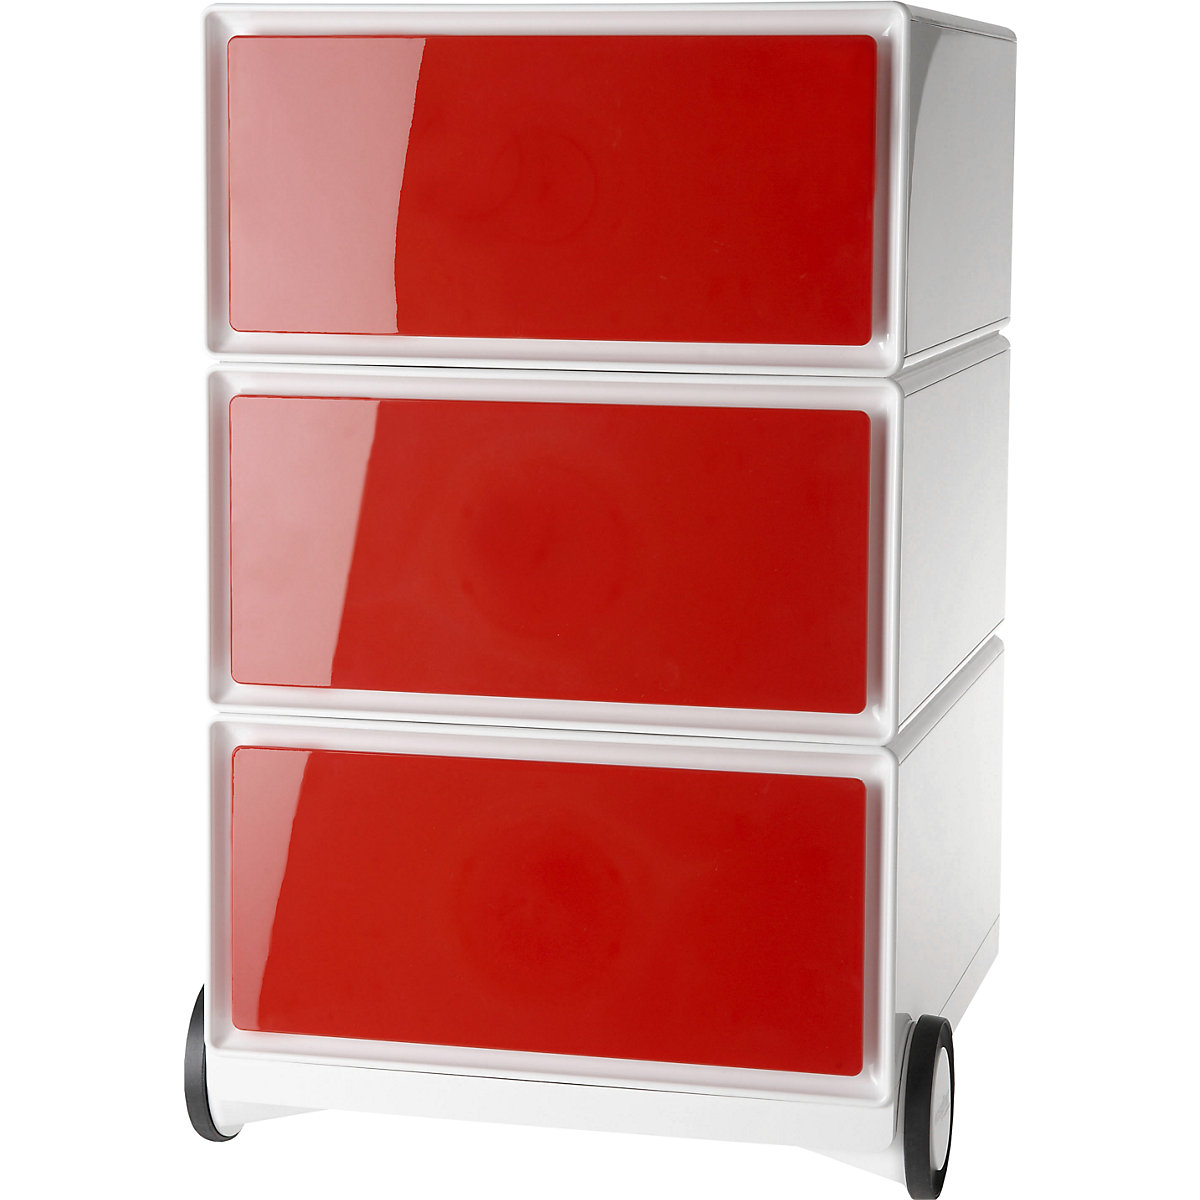 Pomični predalnik easyBox® – Paperflow, 3 predali, bele / rdeče barve-11